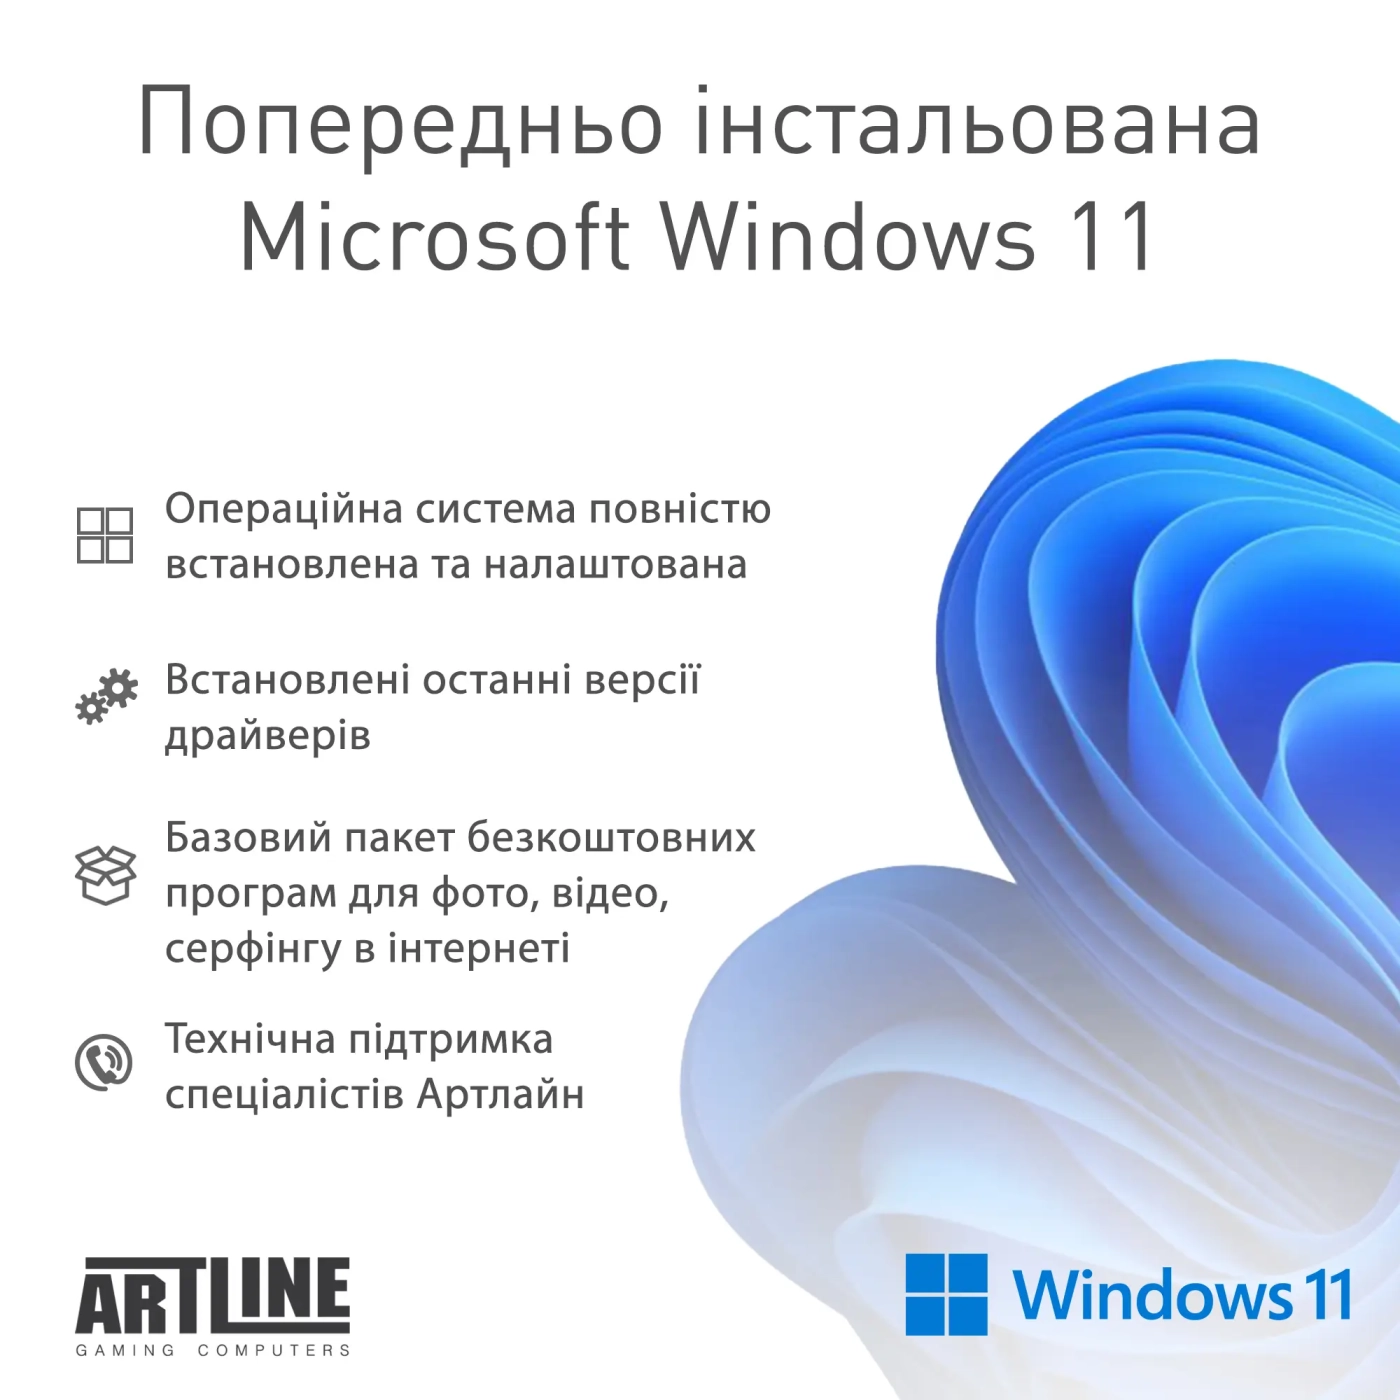 Купить Компьютер ARTLINE Gaming Y60 Windows 11 Home (Y60v09) - фото 9